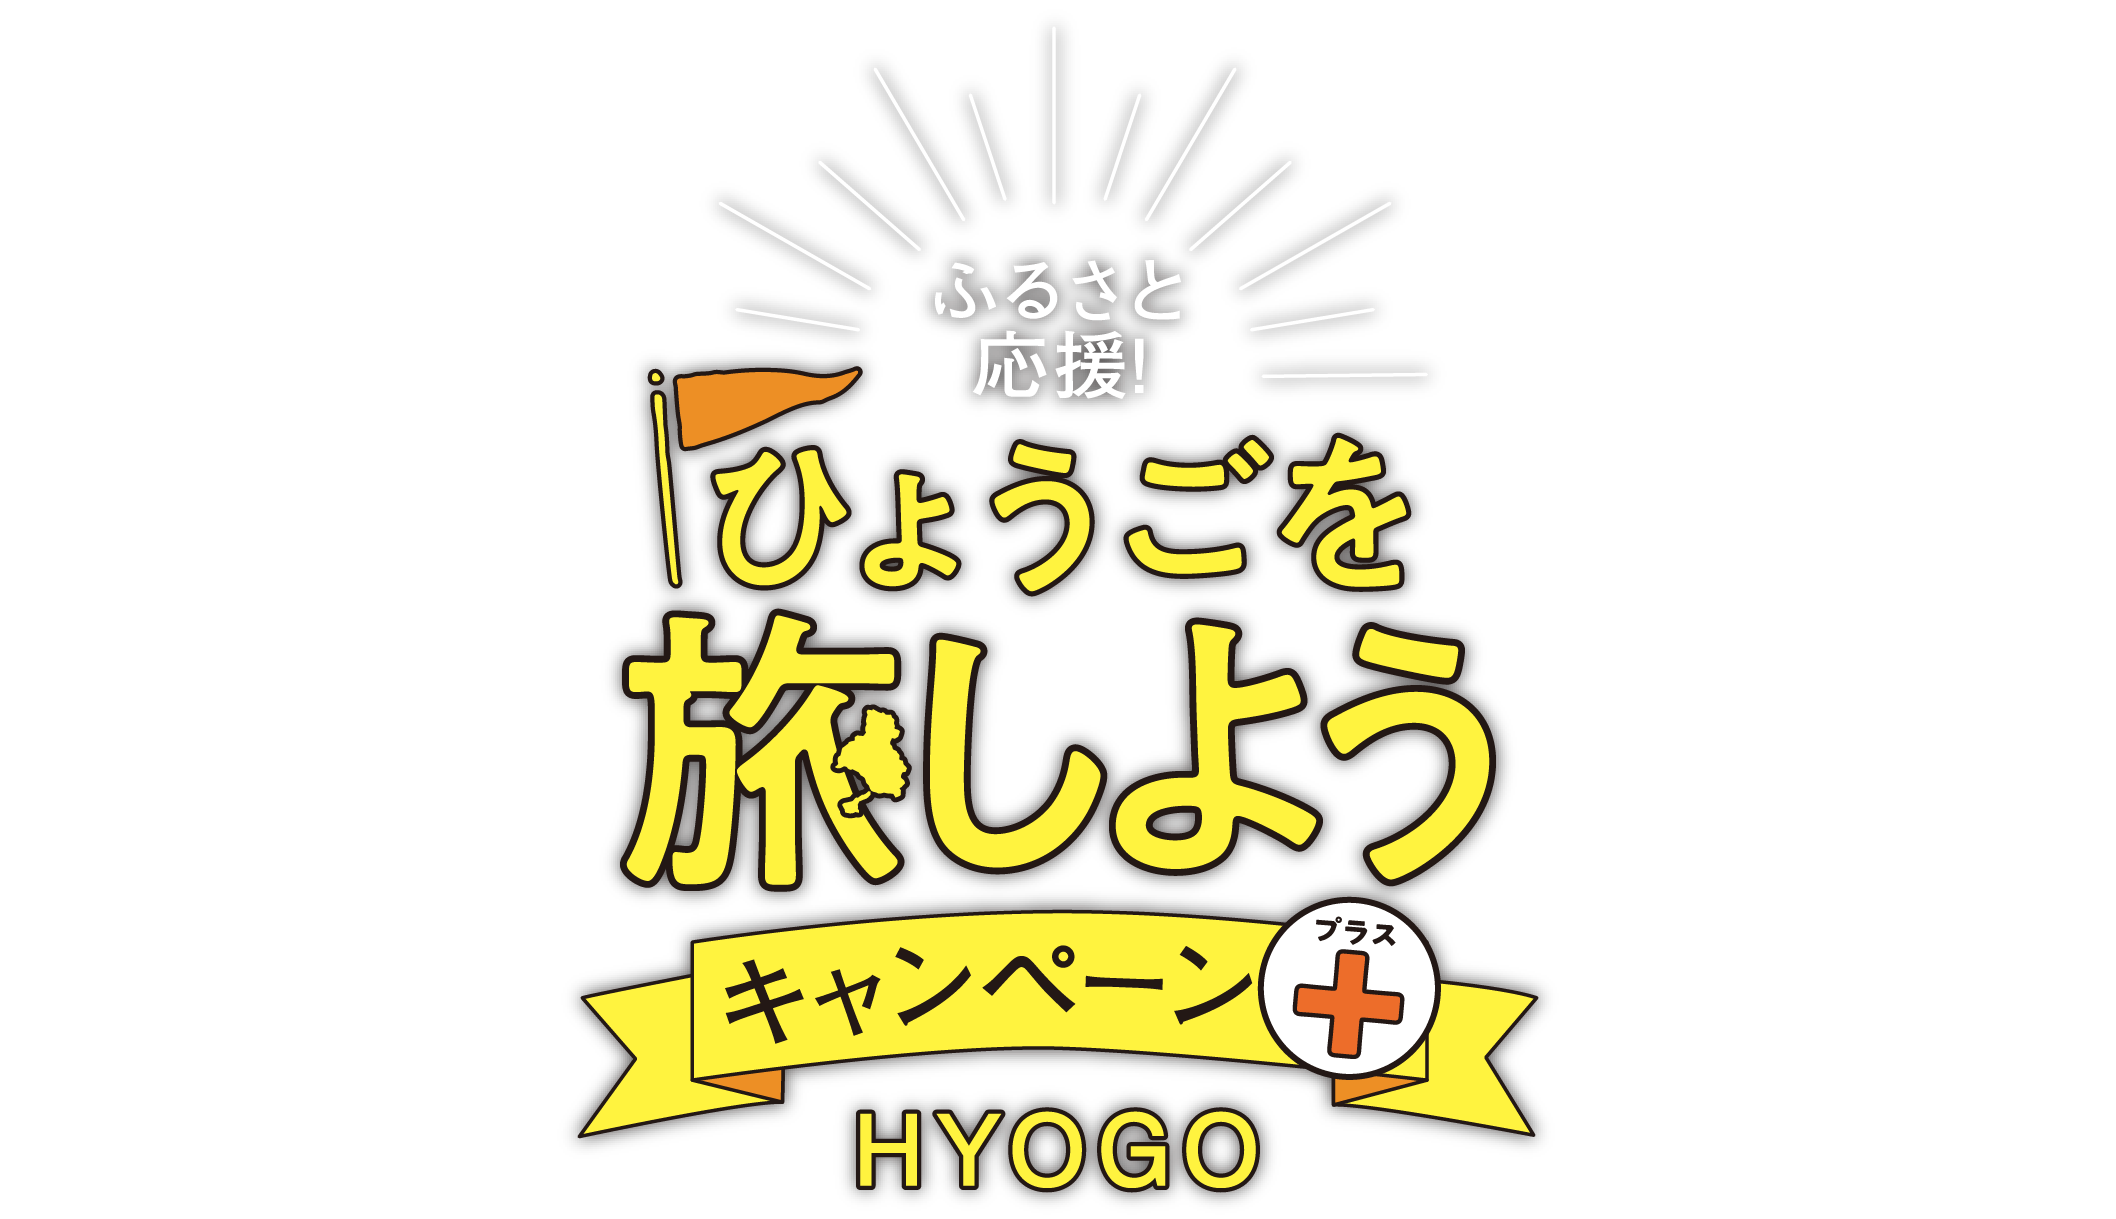 ふるさと応援 ひょうごを旅しようキャンペーン HYOGO